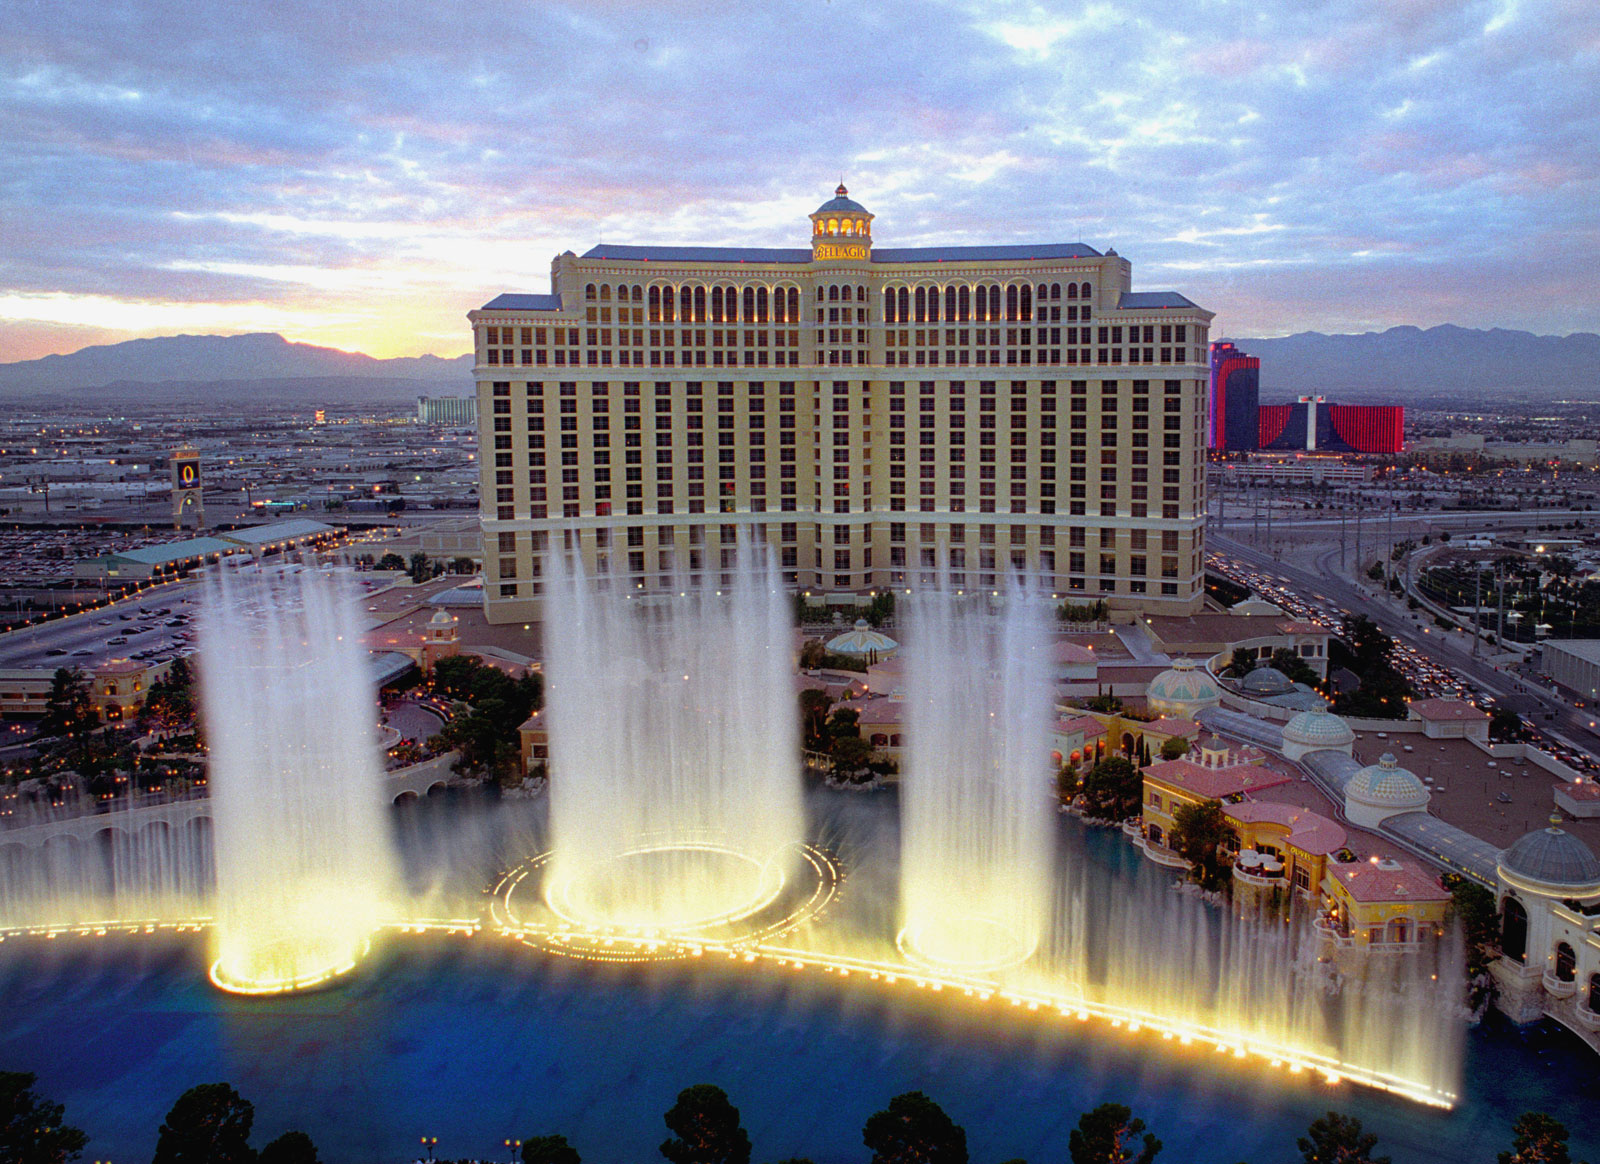 Las Vegas Bellagio Hotel